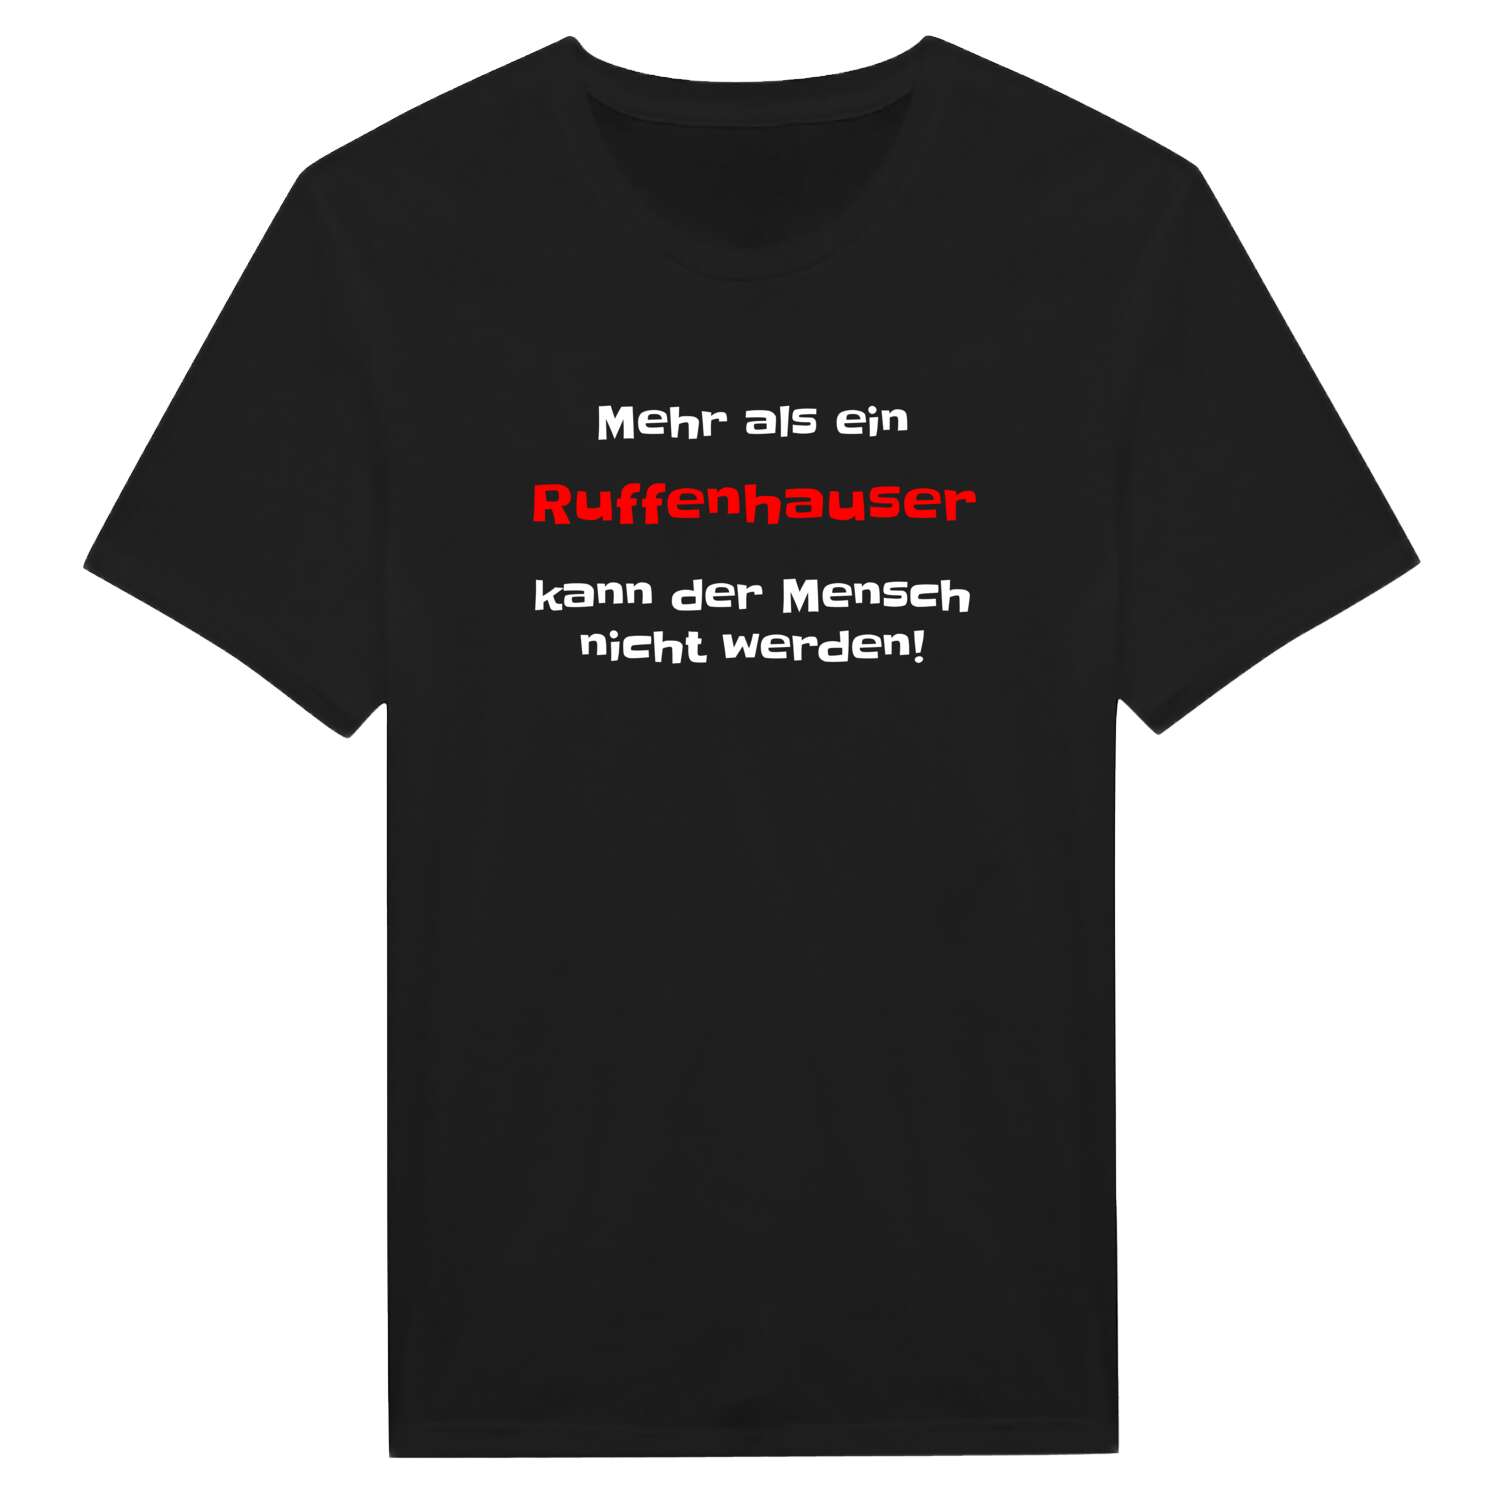 Ruffenhaus T-Shirt »Mehr als ein«